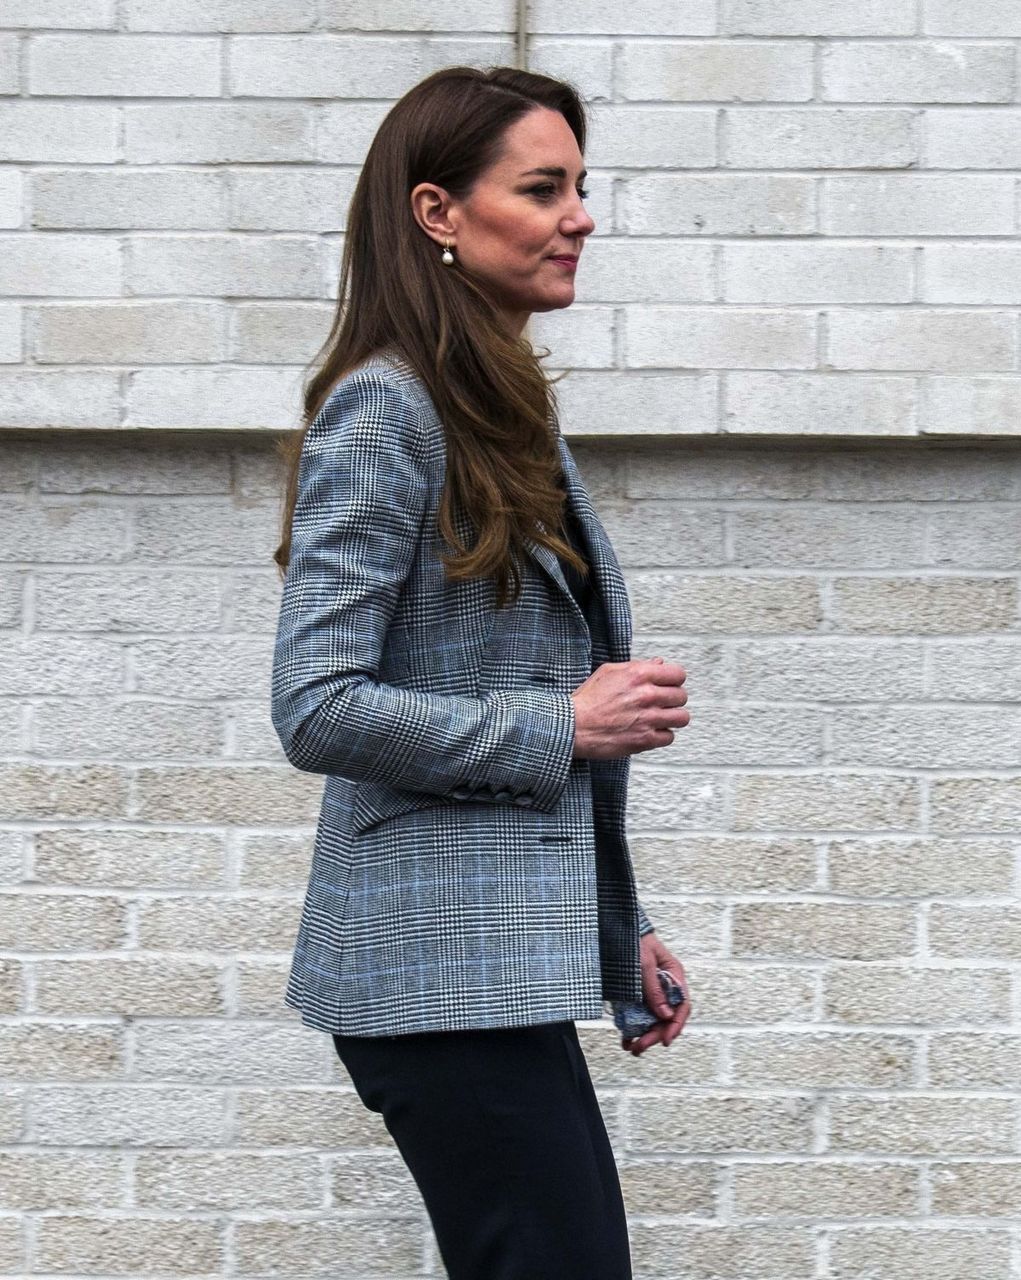 Kate Middleton Visits Parental Support Project London